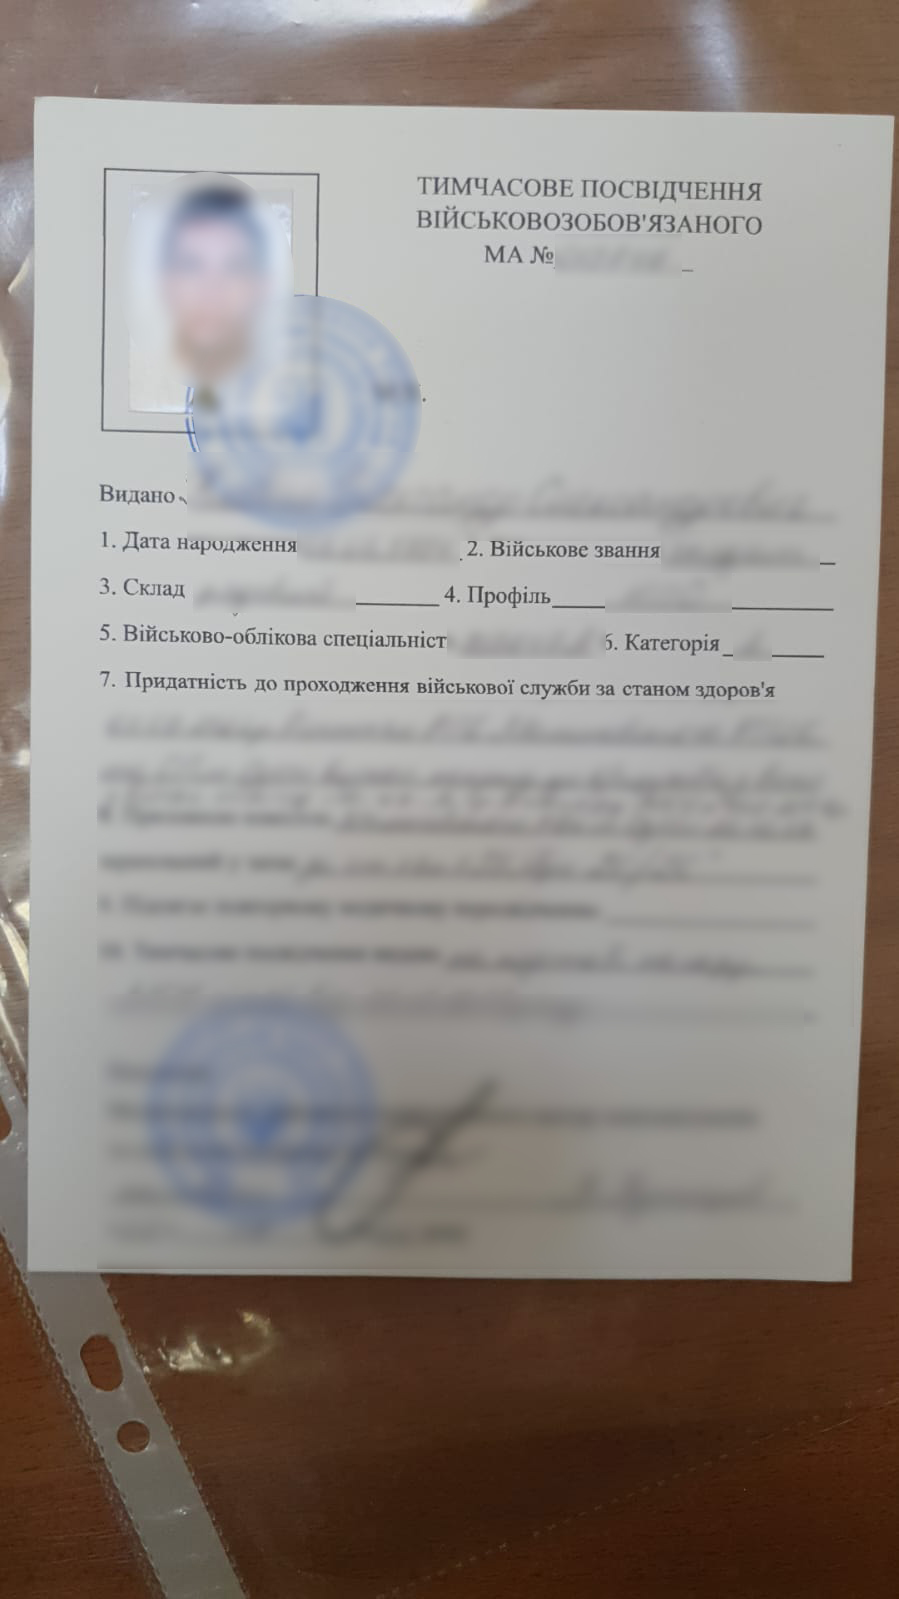 Уклонист попытался пересечь границу в Орловке по фальшивому удостоверению, а заработал сразу на два уголовных производства